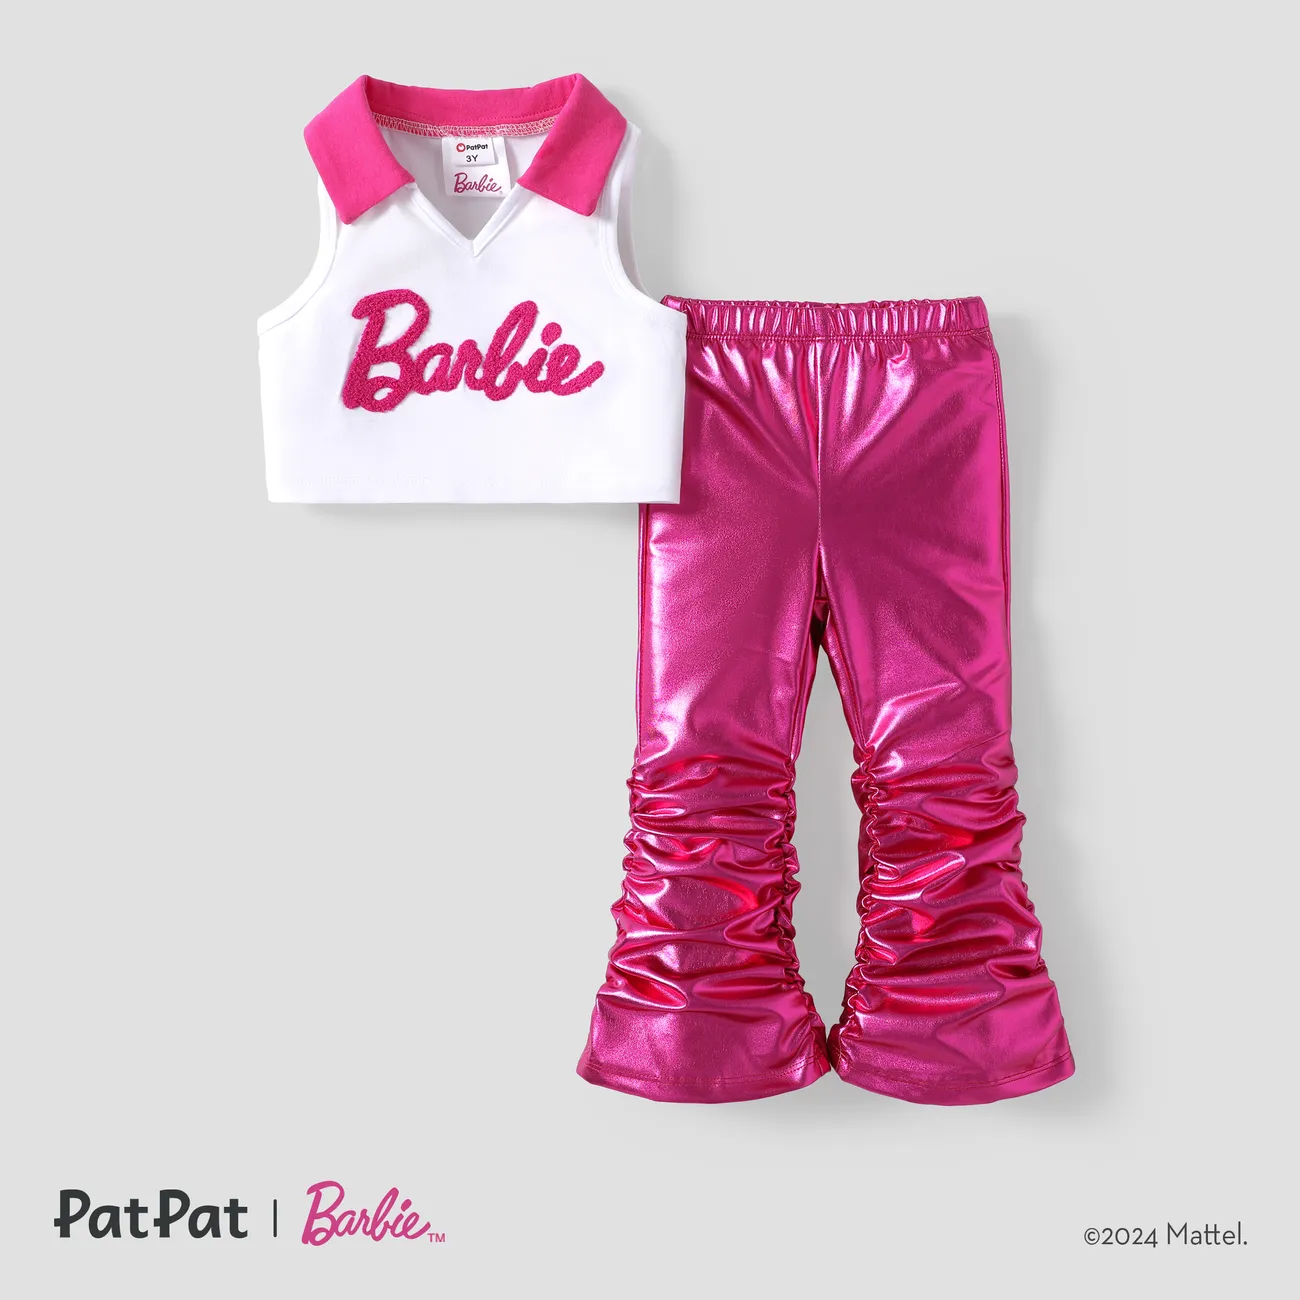 Barbie 2 unidades Chica Cuello de solapa Dulce Conjuntos rosa blanca big image 1